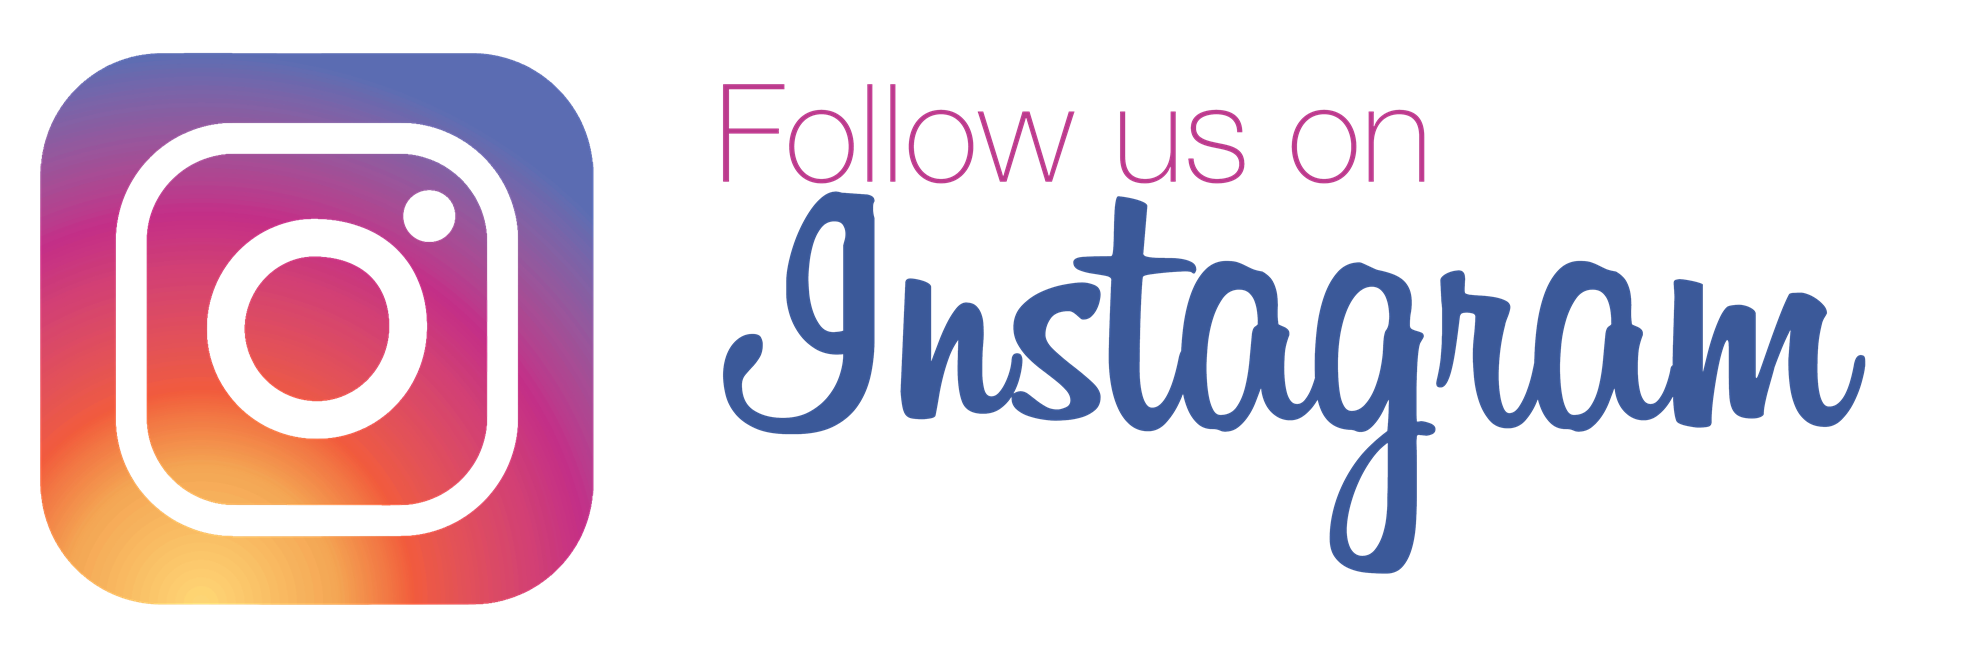 Logo Brand Trademark Instagram Download HQ PNG PNG Image